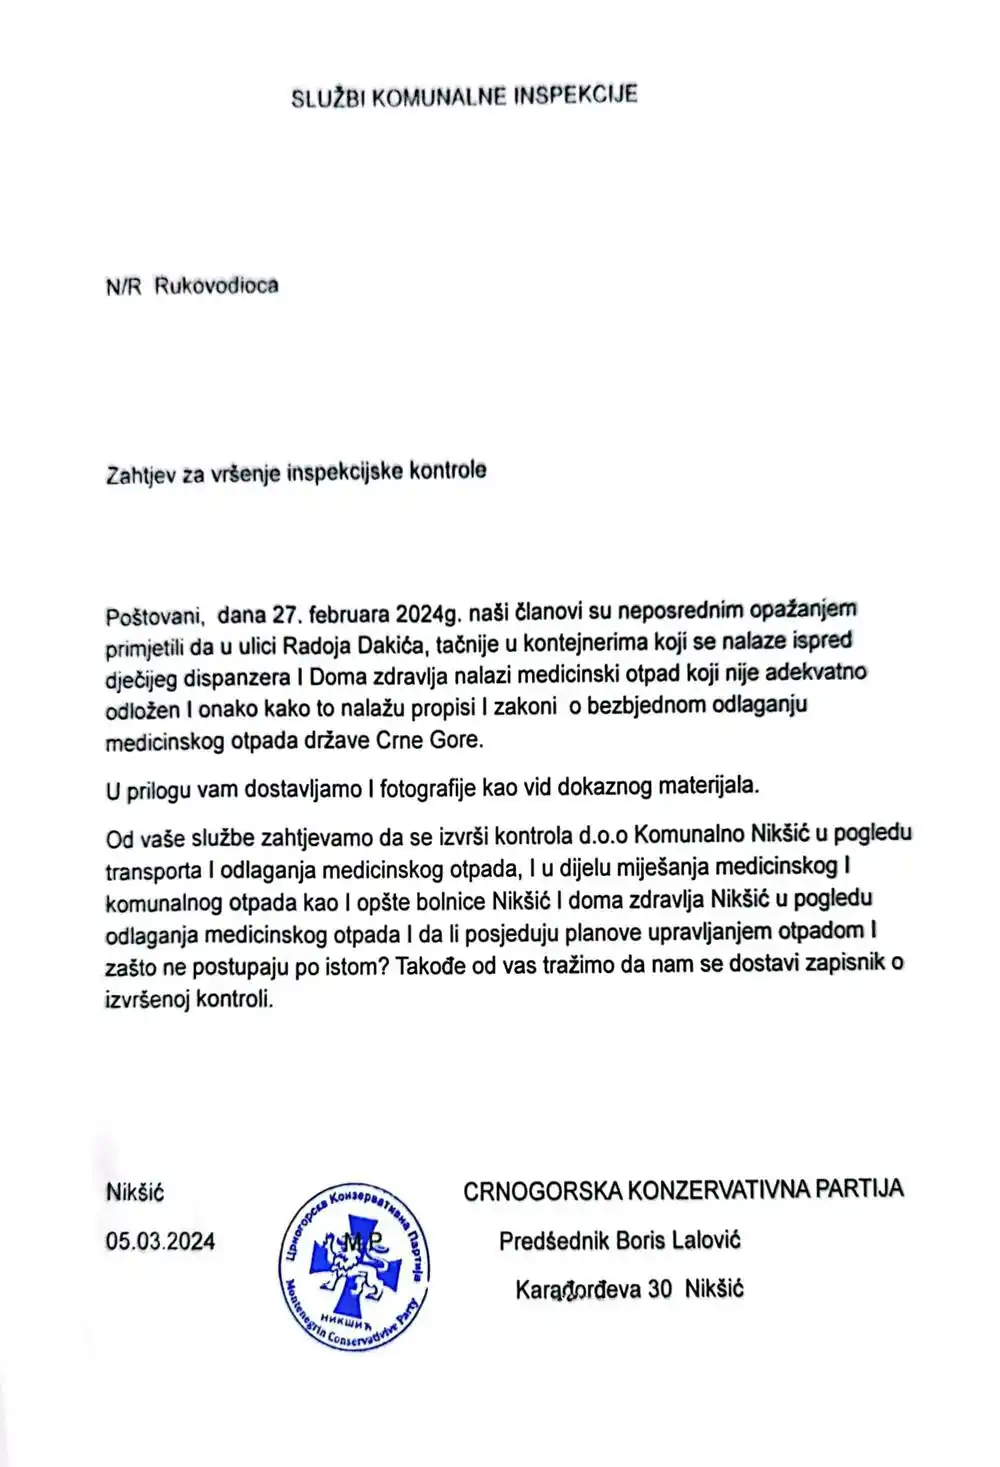 Nikšić: Crnogorska konzervativna partija podnijela prijavu zbog neadekvatnog odlaganja medicinskog otpada